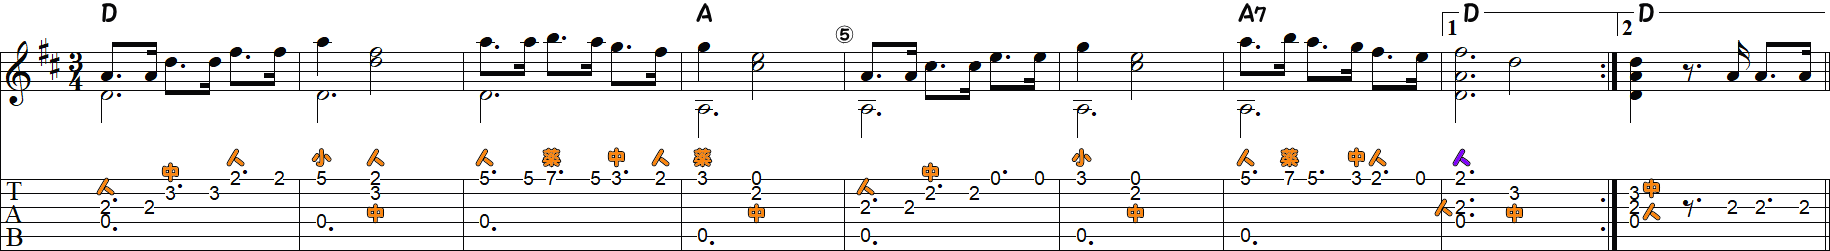 ラ・クカラチャ（ソロギター1～9小節目）の譜面